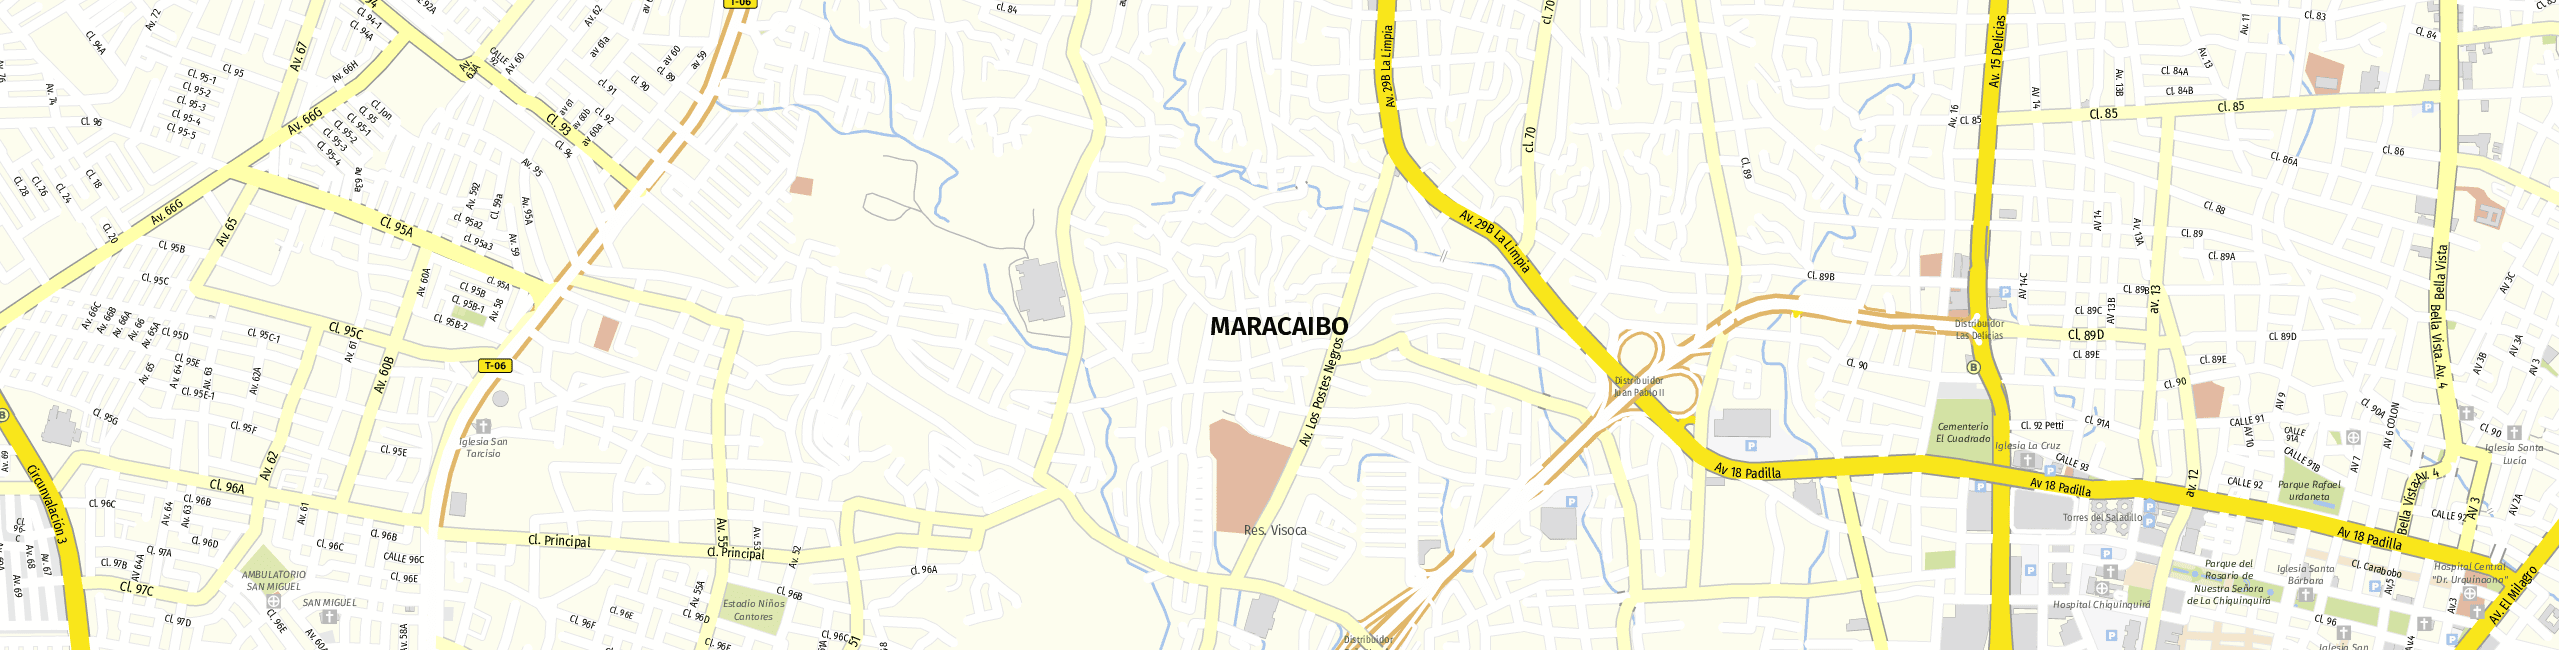 Stadtplan Maracaibo zum Downloaden.